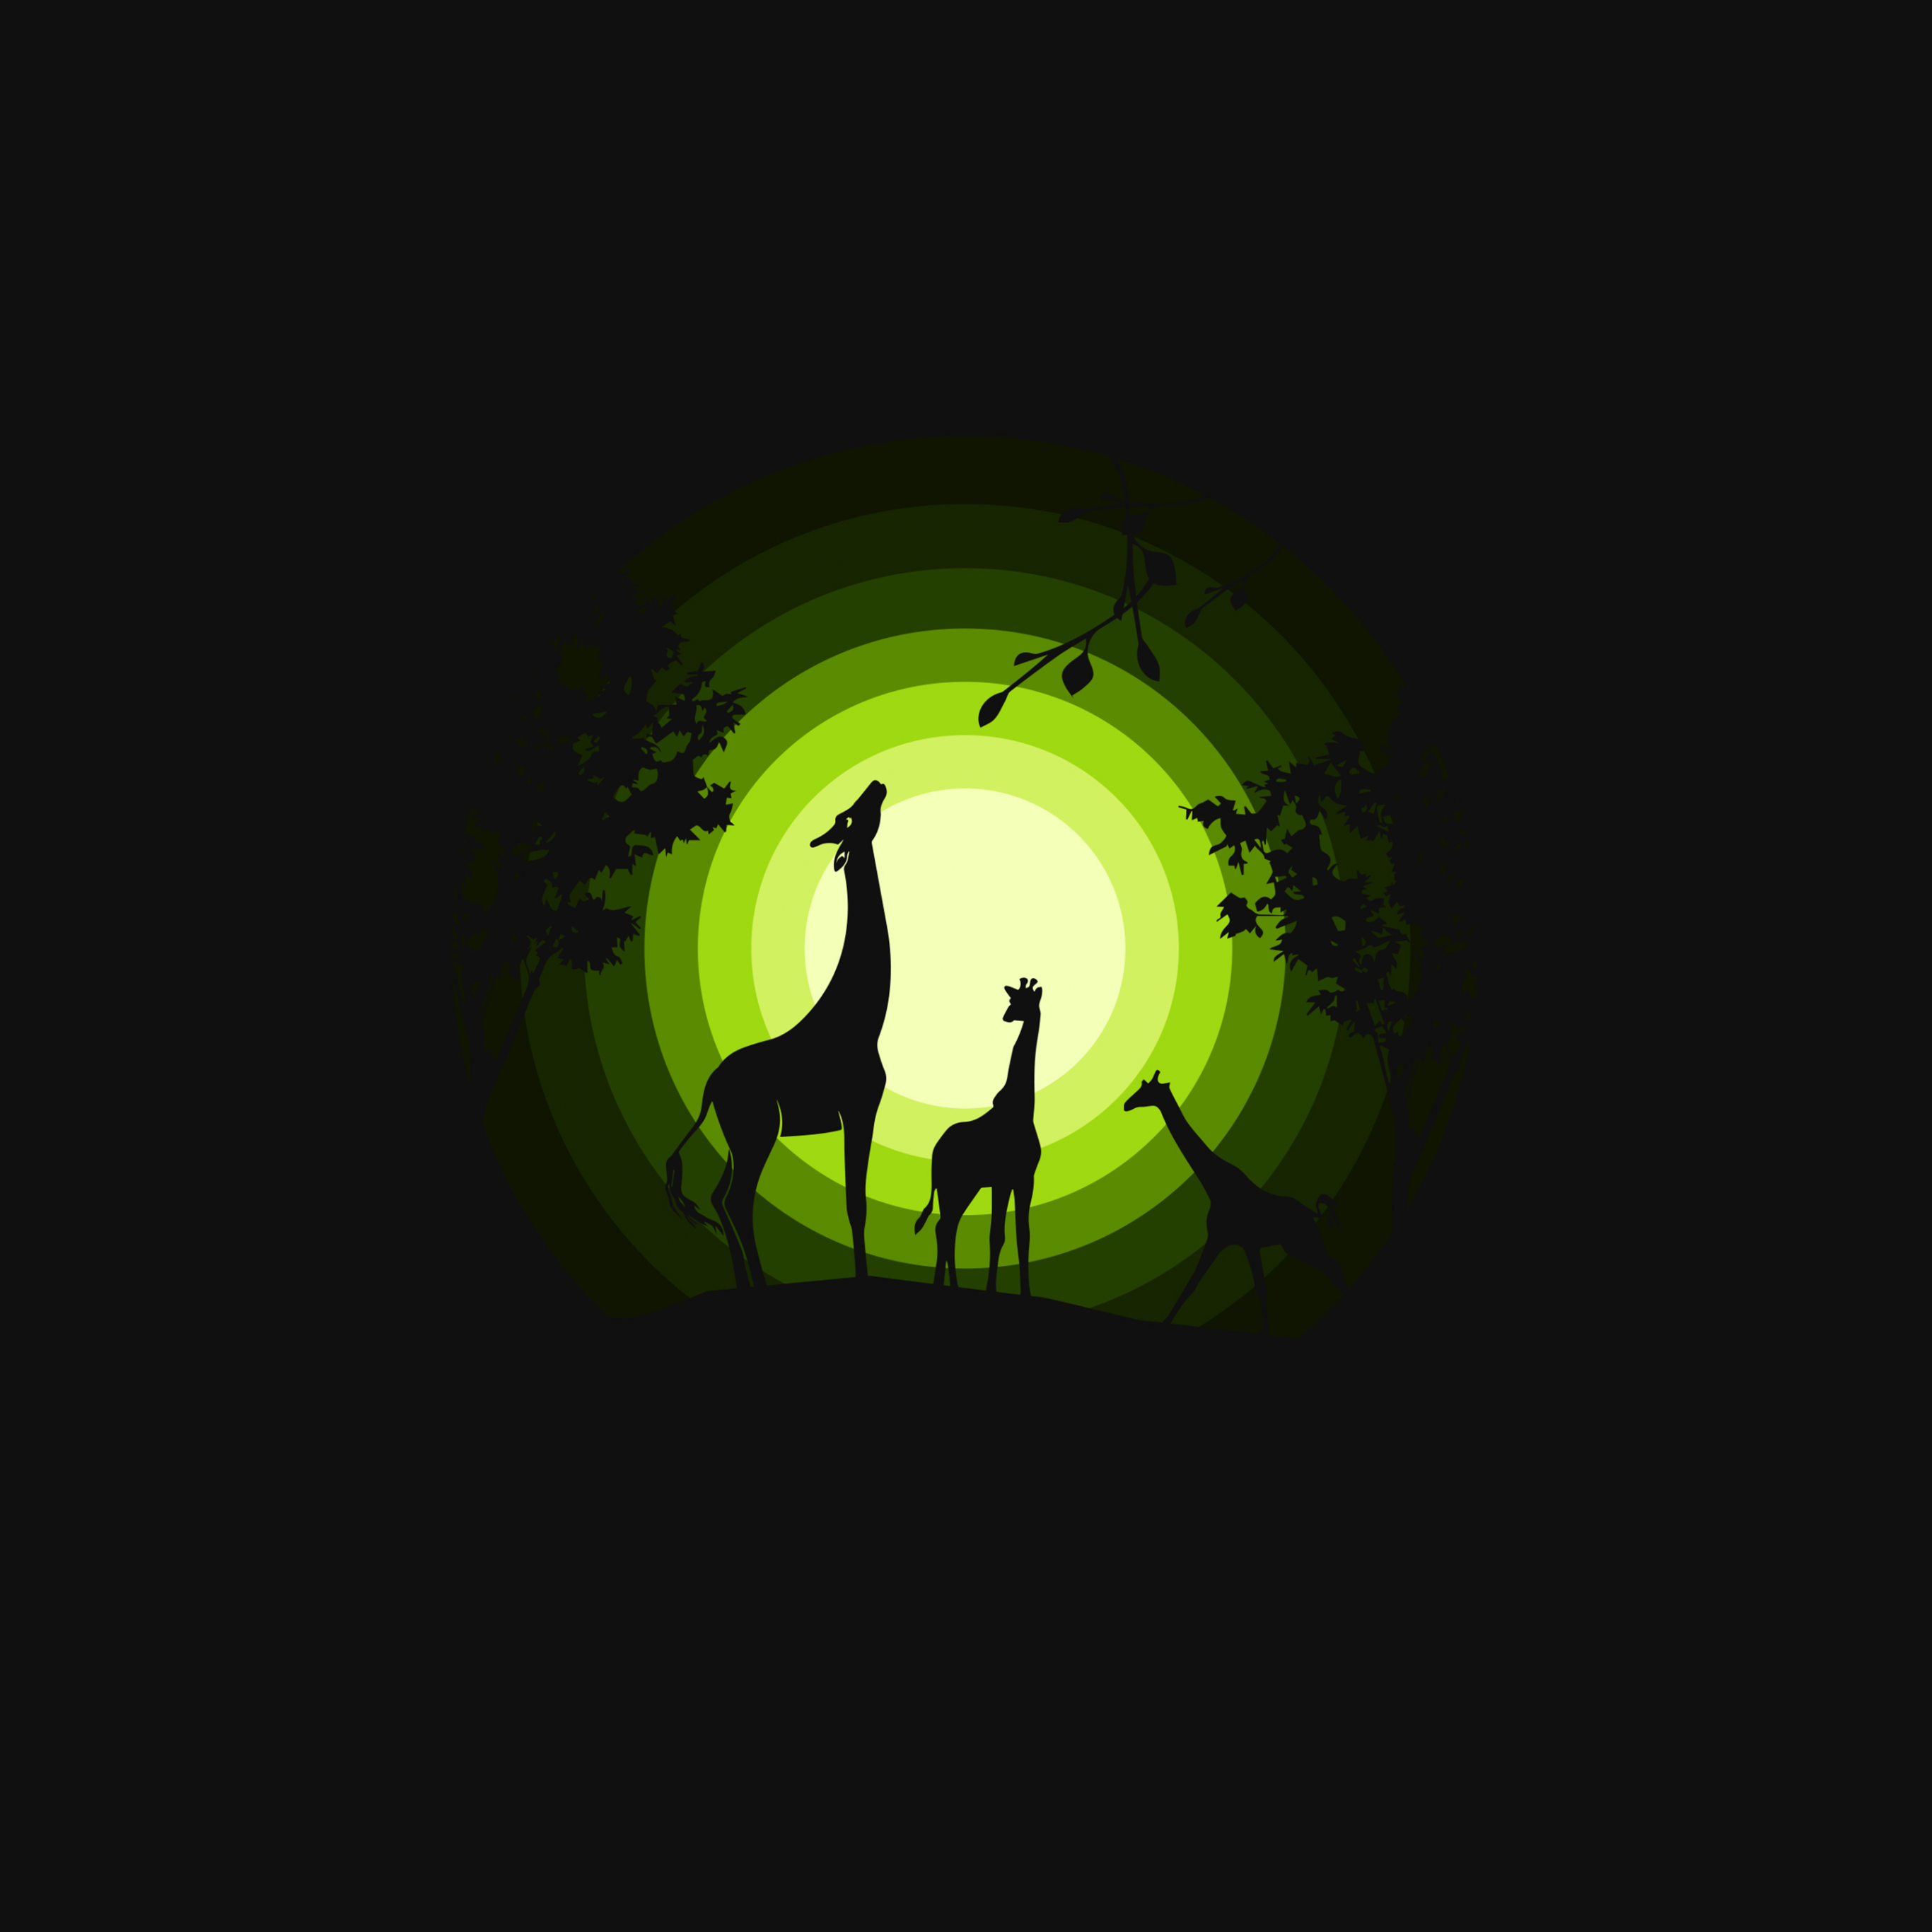 Giraffe Wallpaper 4K, Cubs, Silhouette, Forest, Moon, Green, Black Dark